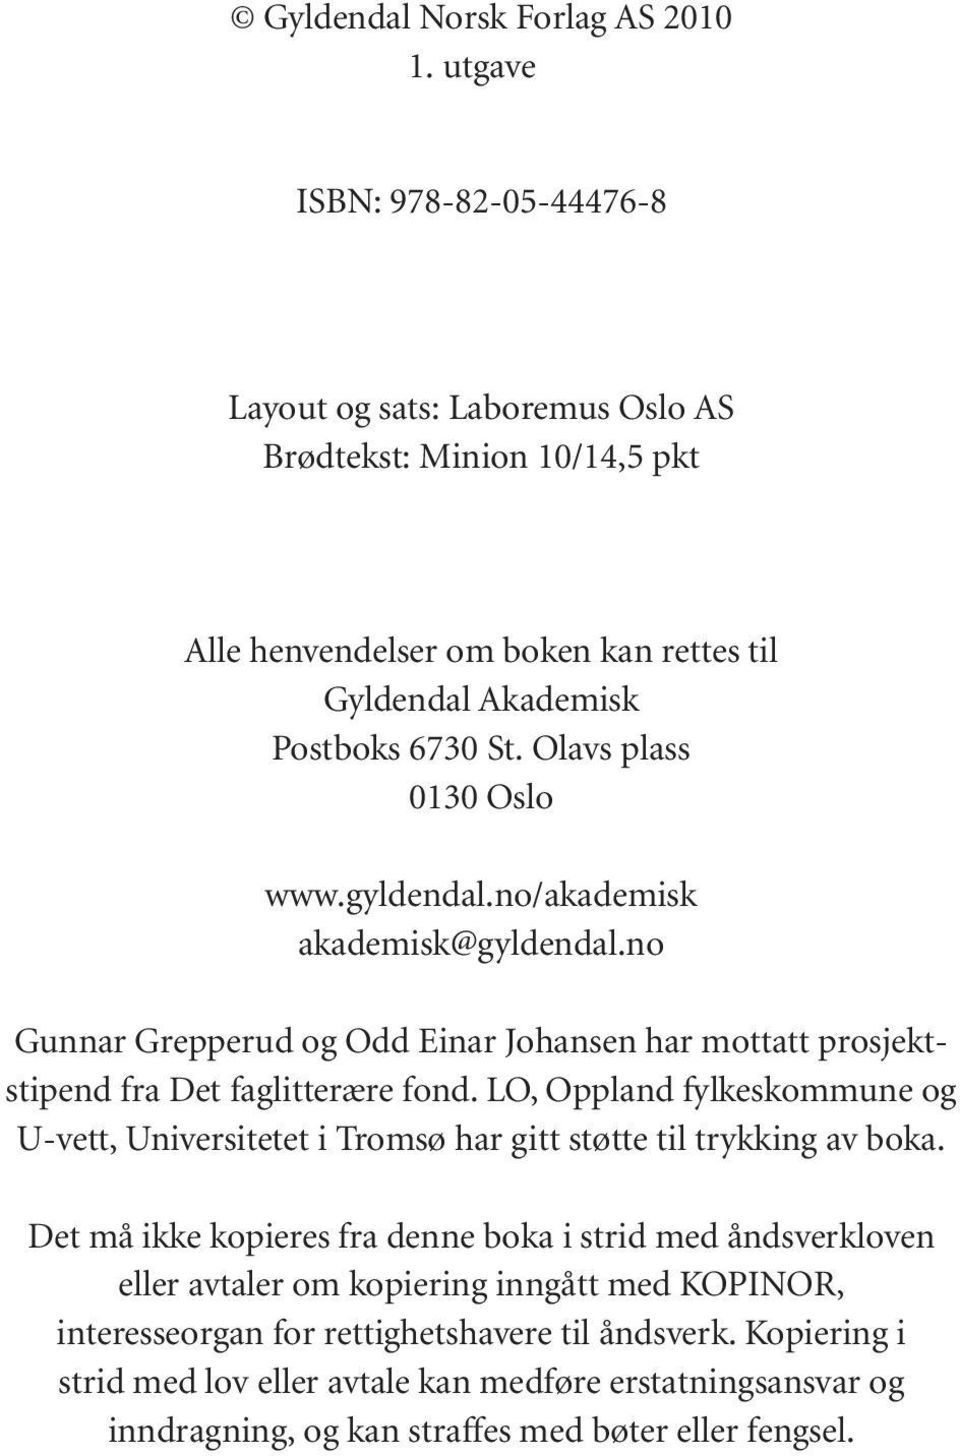 Olavs plass 0130 Oslo www.gyldendal.no/akademisk akademisk@gyldendal.no Gunnar Grepperud og Odd Einar Johansen har mottatt prosjektstipend fra Det faglitterære fond.